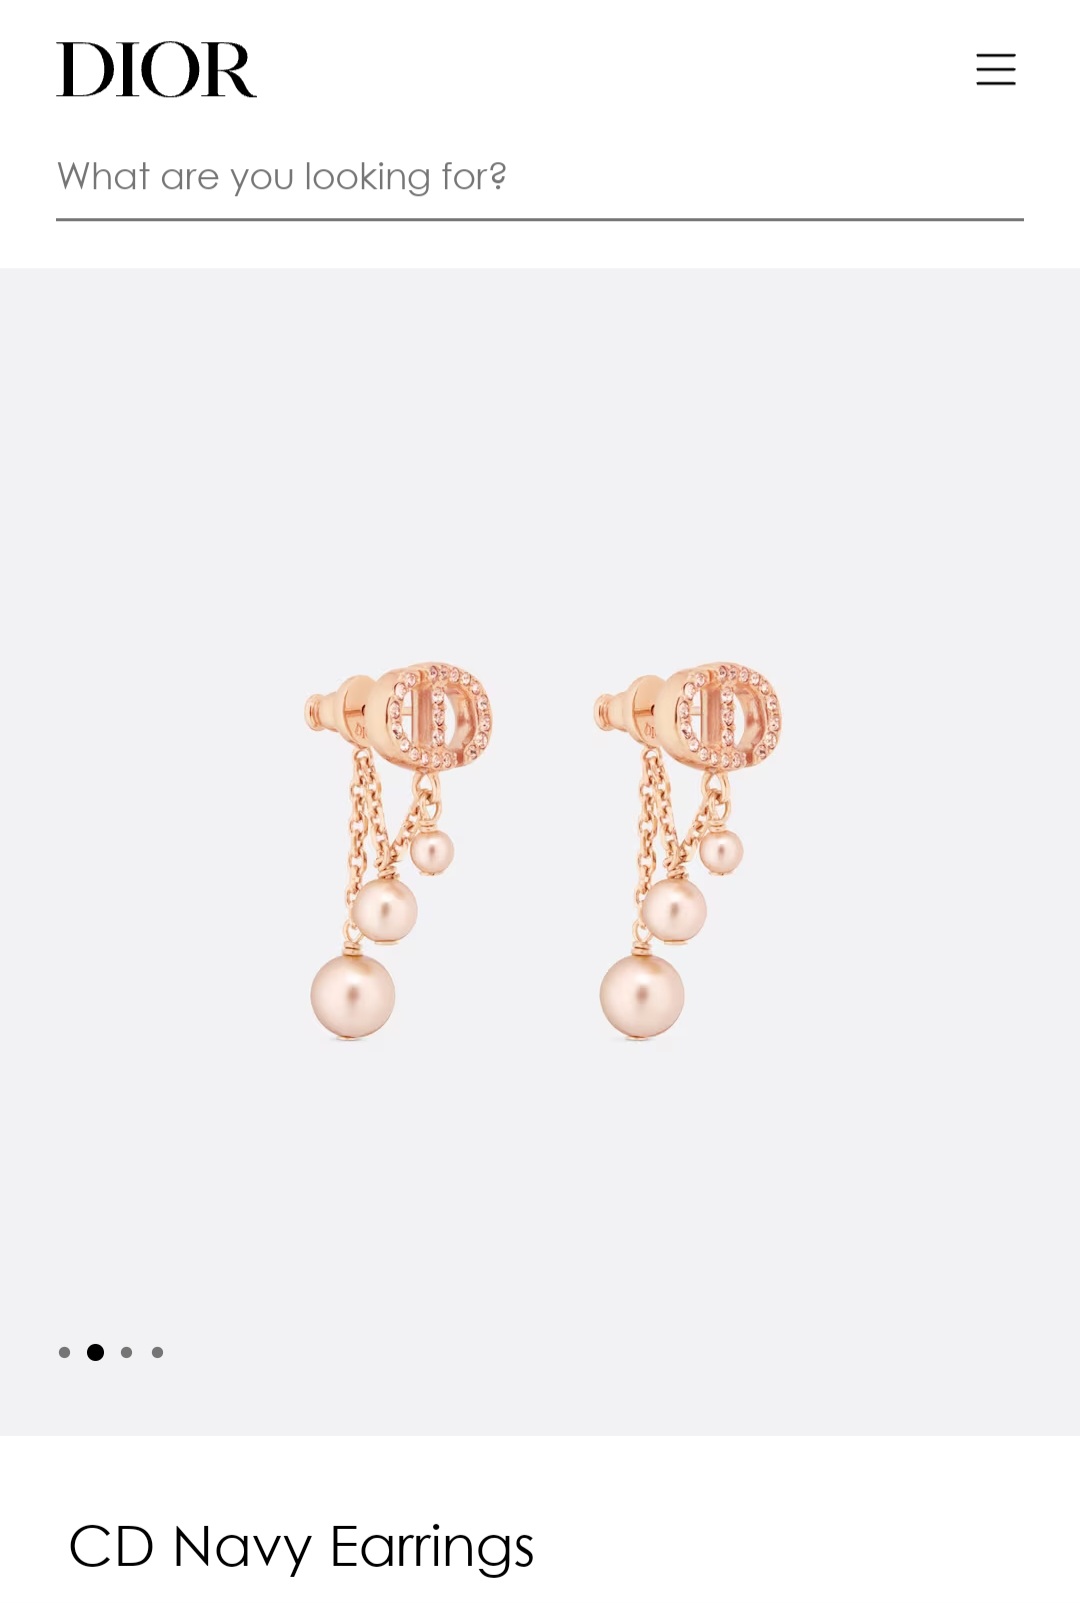 Dior CD Navy earrings